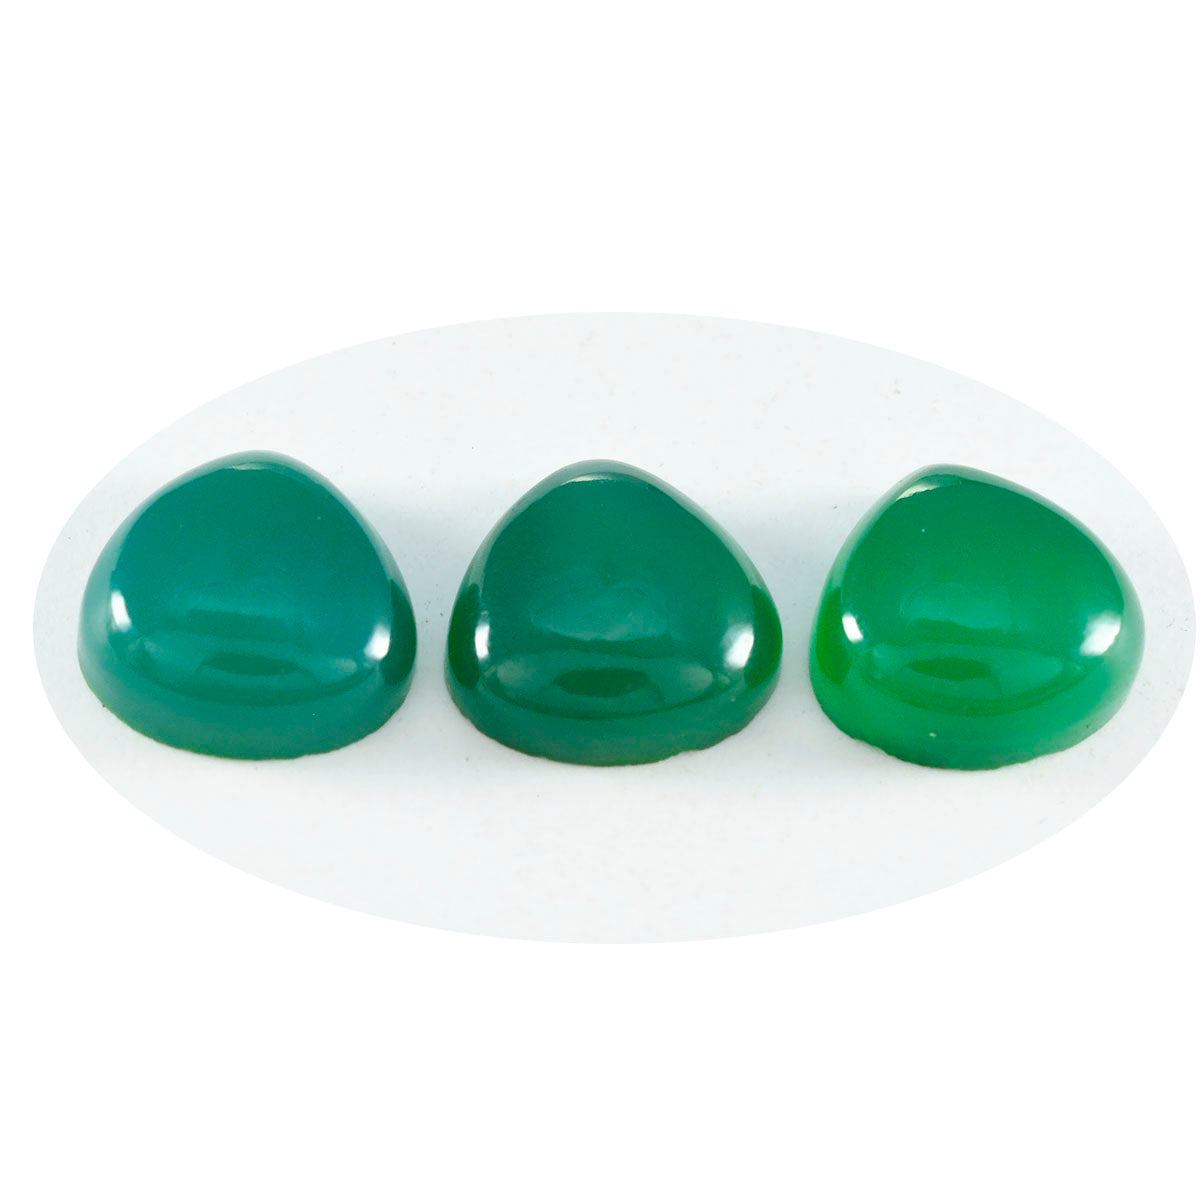 Riyogems 1 pieza cabujón de ónix verde 15x15 mm forma de corazón belleza calidad piedra preciosa suelta